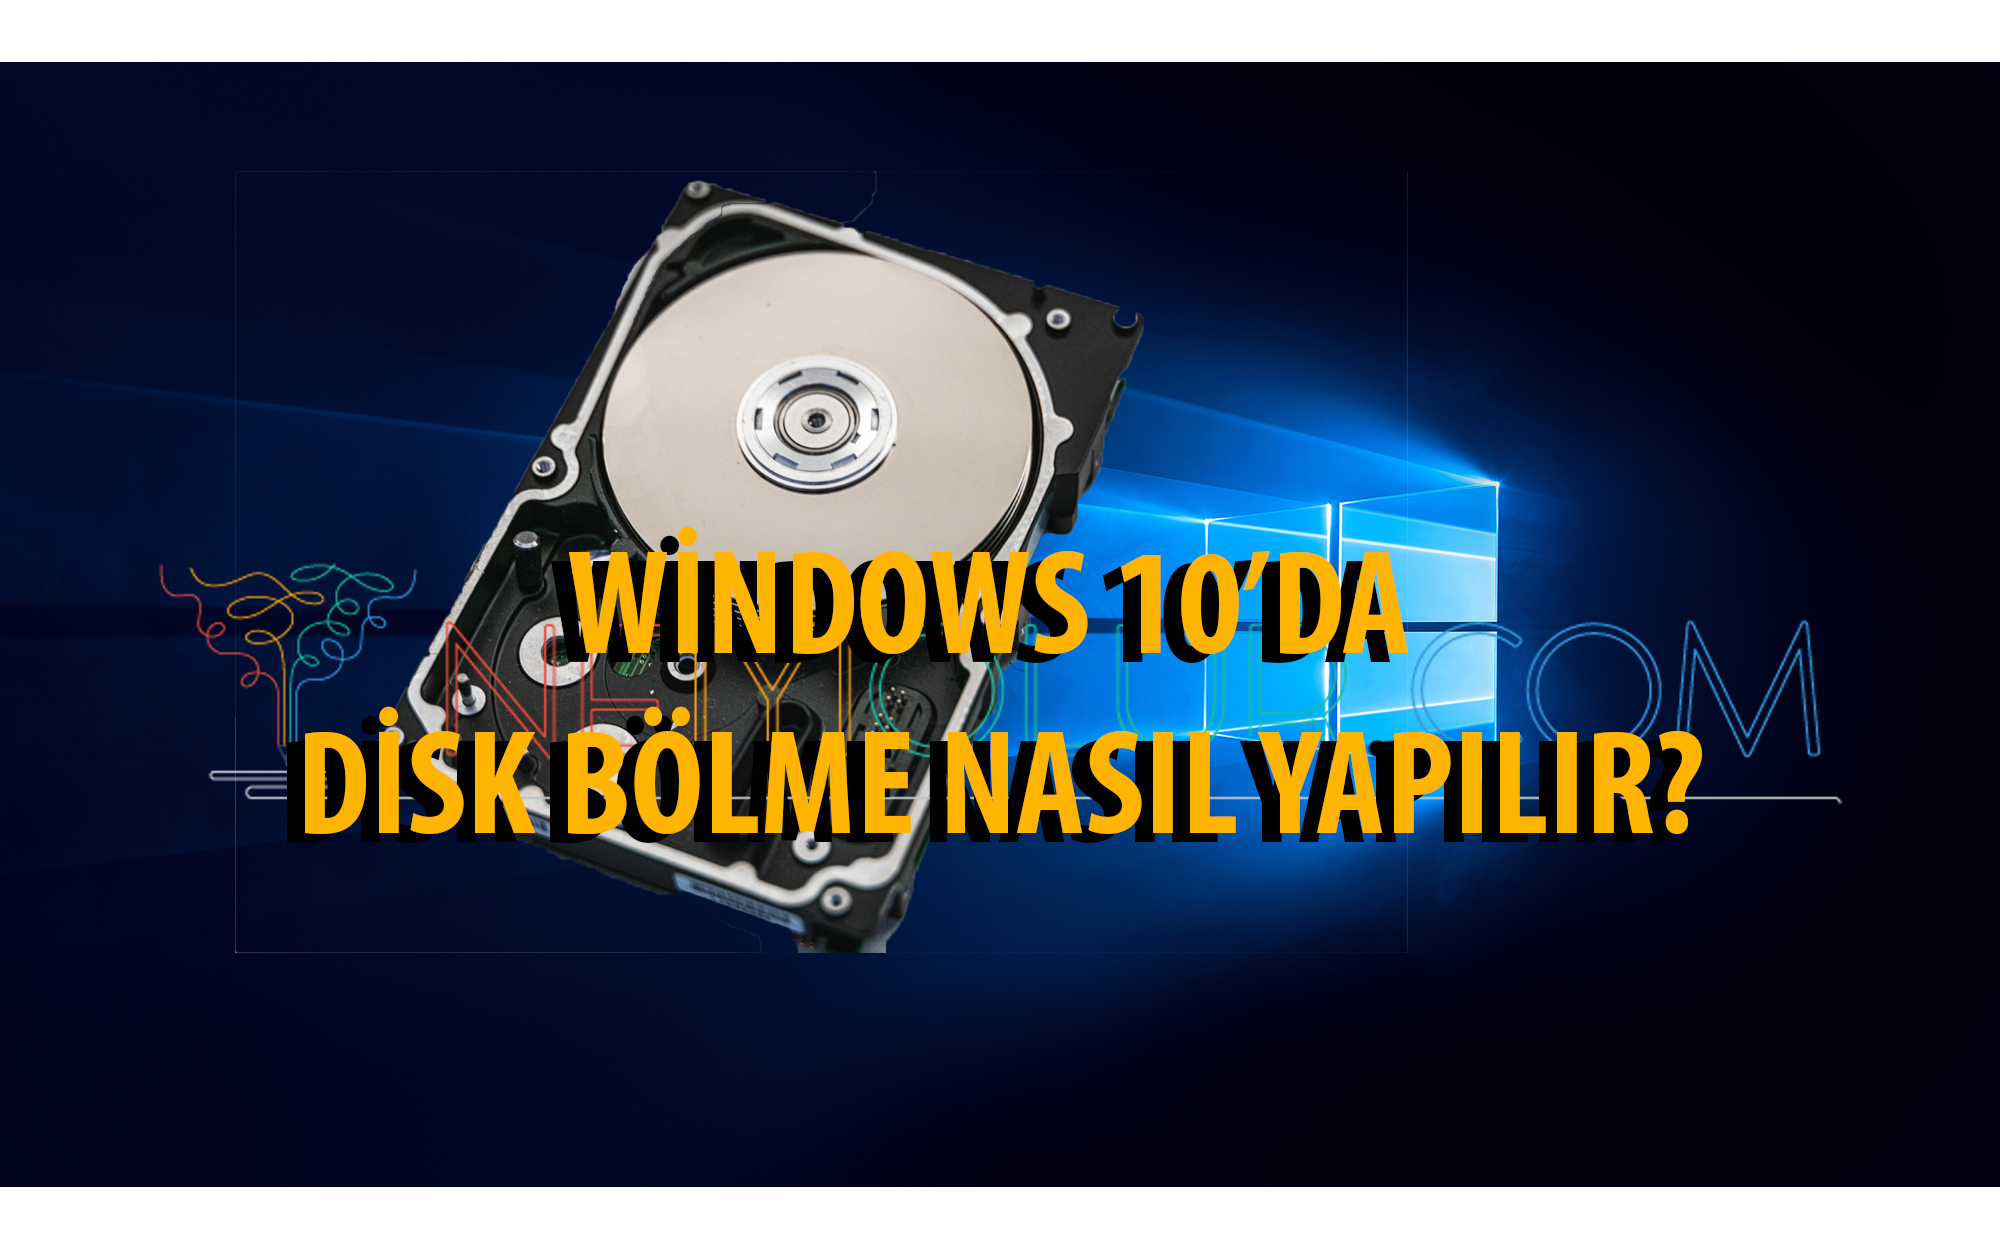 Windows 10 Harddisk Bölme Basit ve Resimli Anlatım